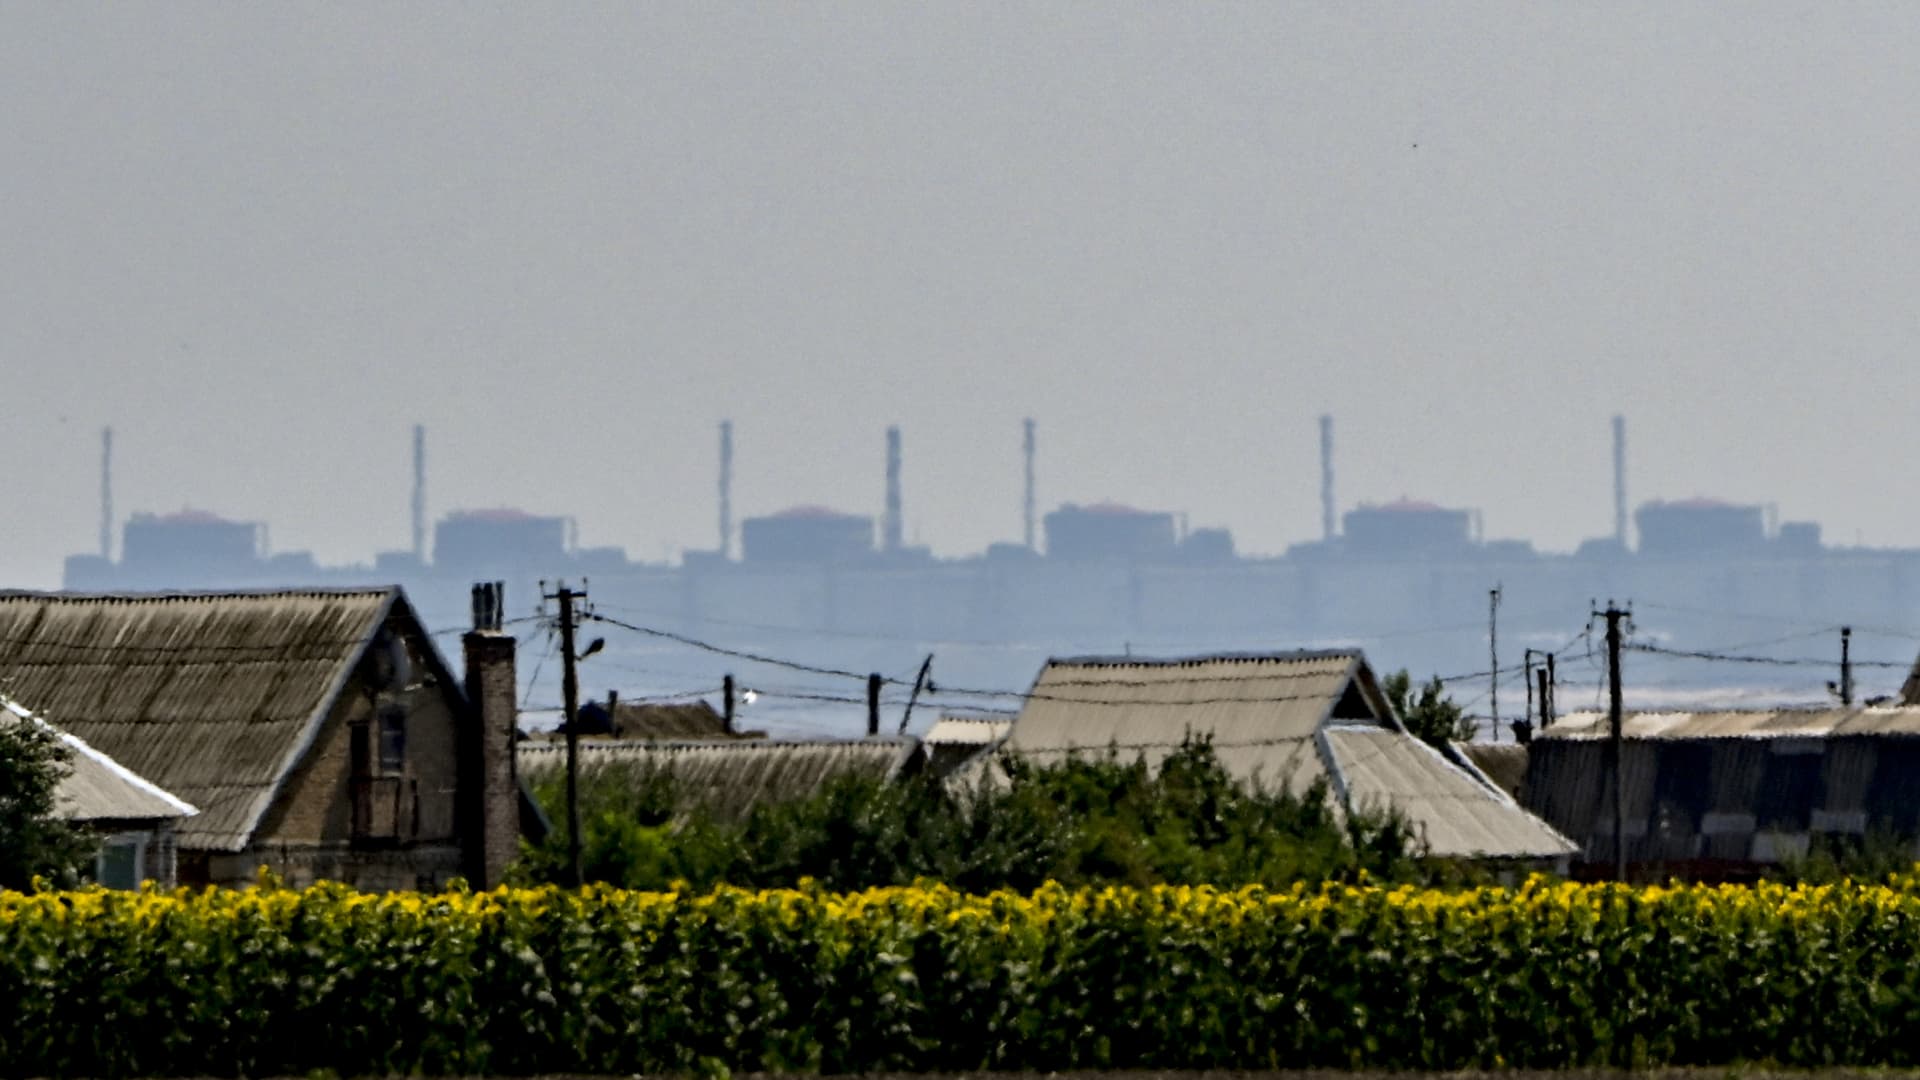 Zaporizhzhia Nuclear Power Plant seen from Nikopol, 7 kilometers away.